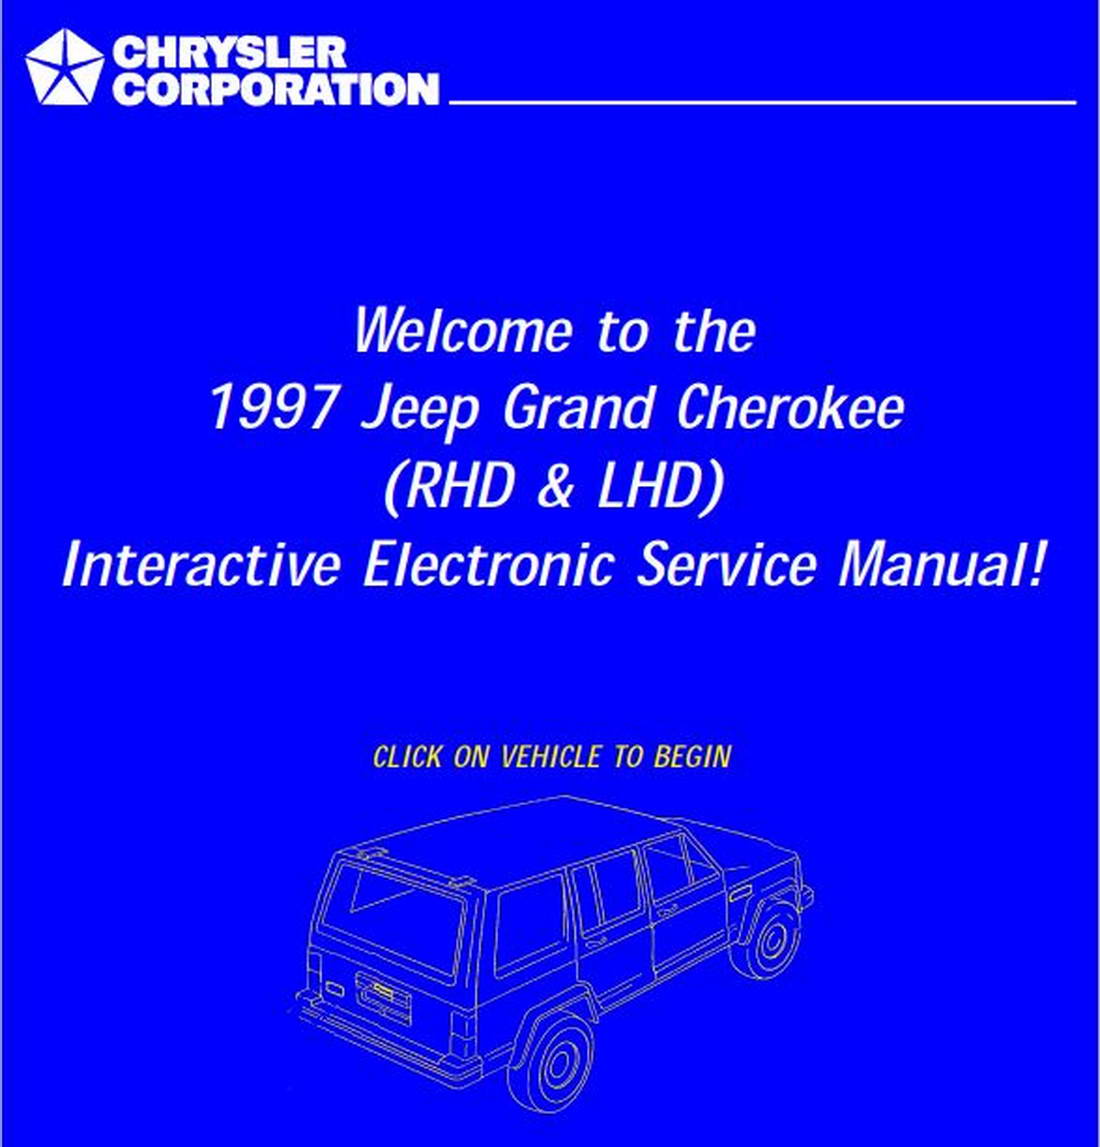 Jeep Grand Cherokee ZG (RHD & LHD) 1997 Service Manual